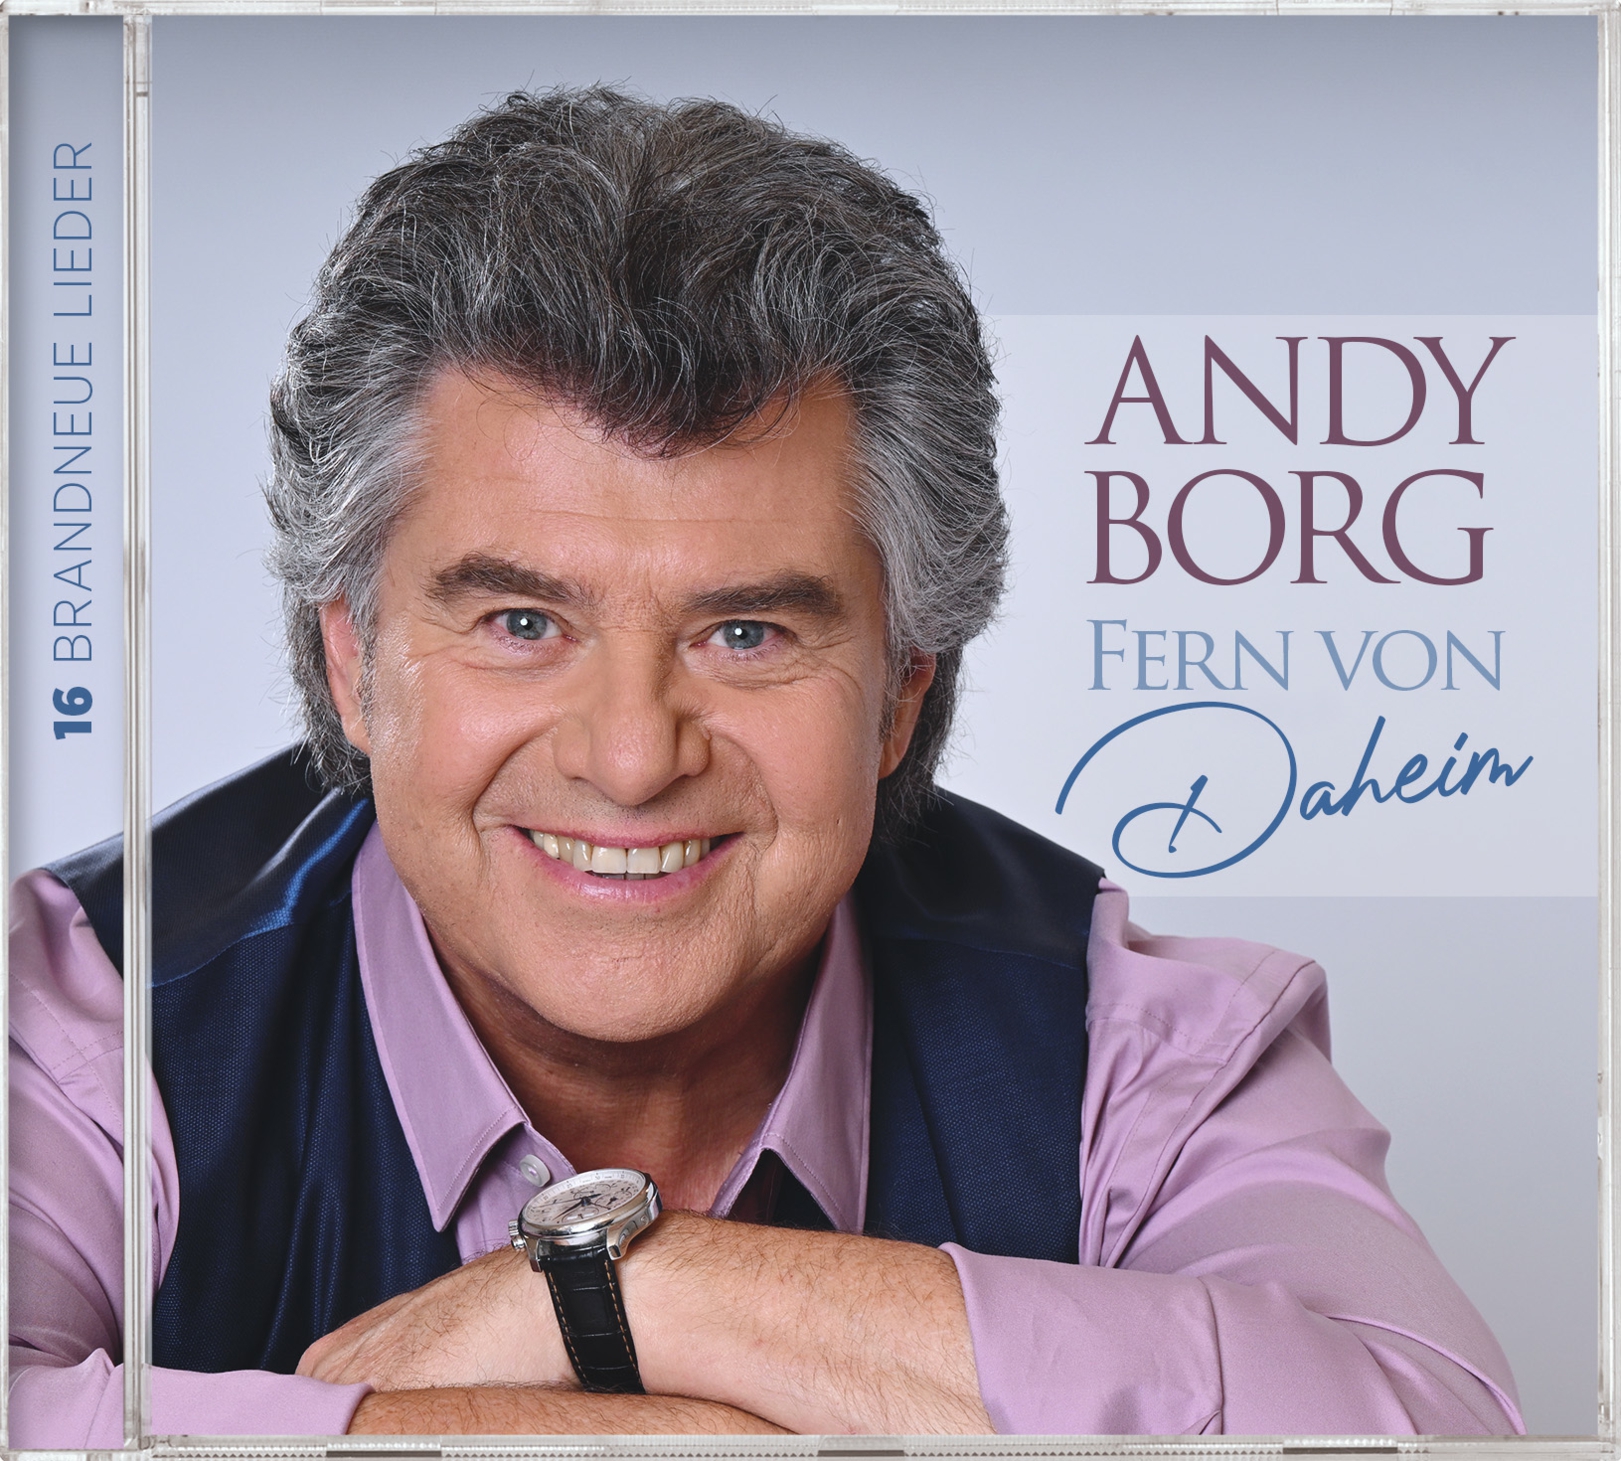 ANDY BORG * Fern von daheim (CD)